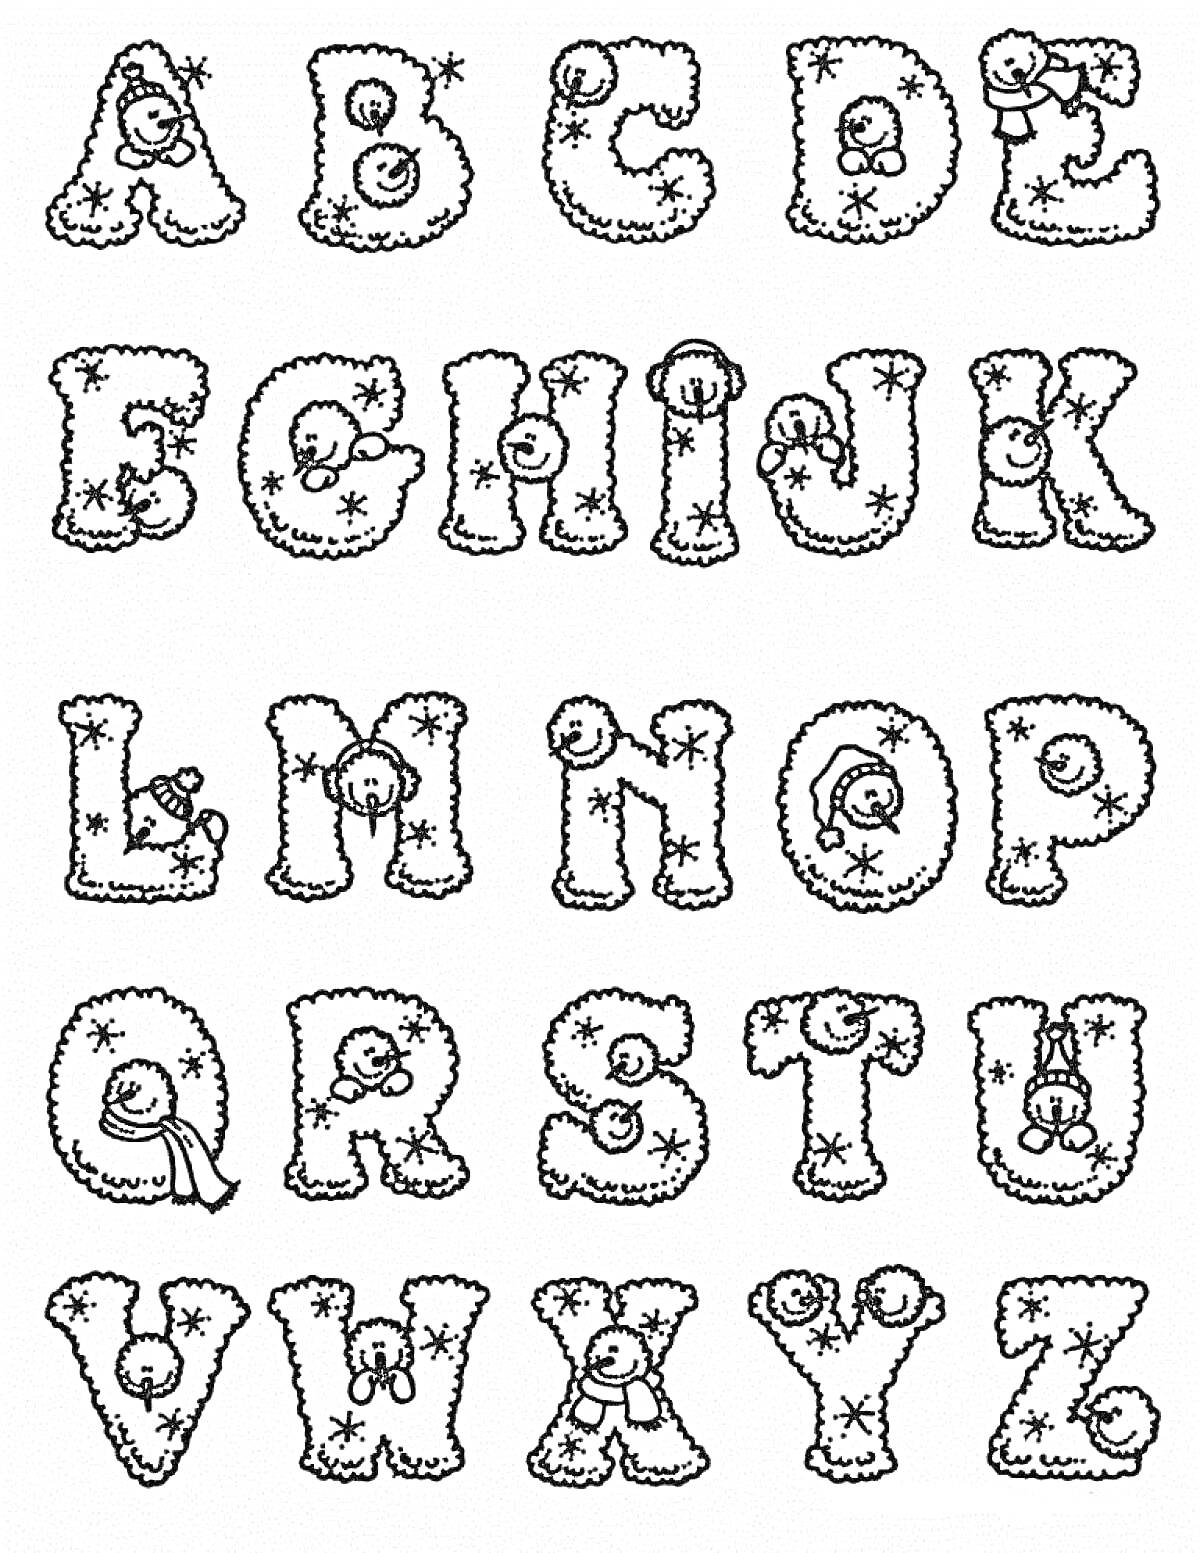 Английский алфавит с новогодними узорами и смайликами